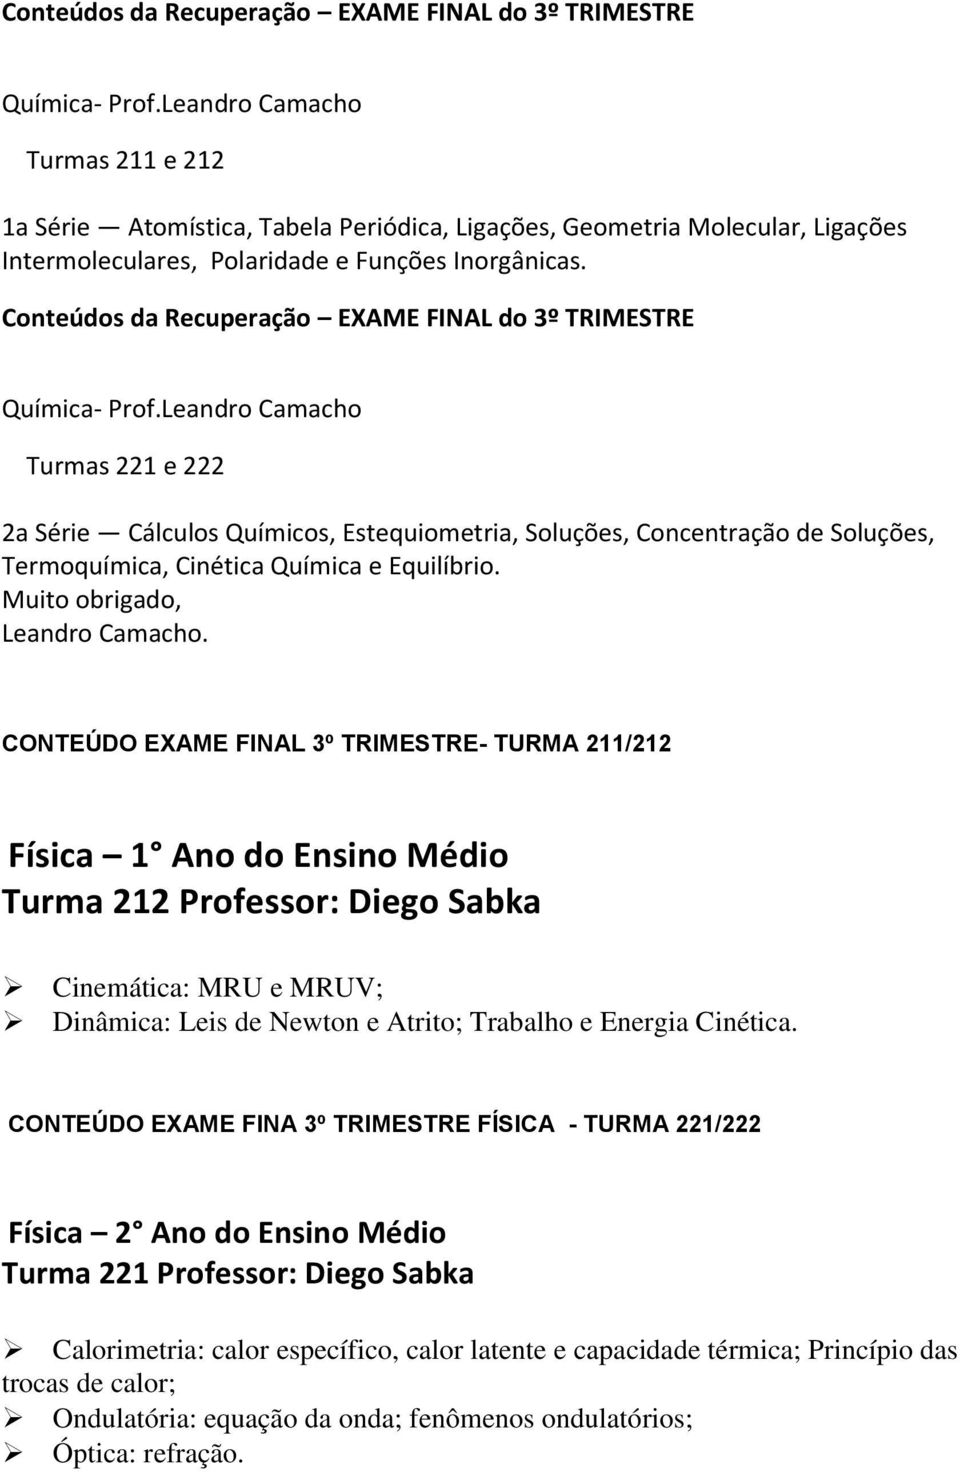 Leandro Camacho Turmas 221 e 222 2a Série Cálculos Químicos, Estequiometria, Soluções, Concentração de Soluções, Termoquímica, Cinética Química e Equilíbrio. Muito obrigado, Leandro Camacho.